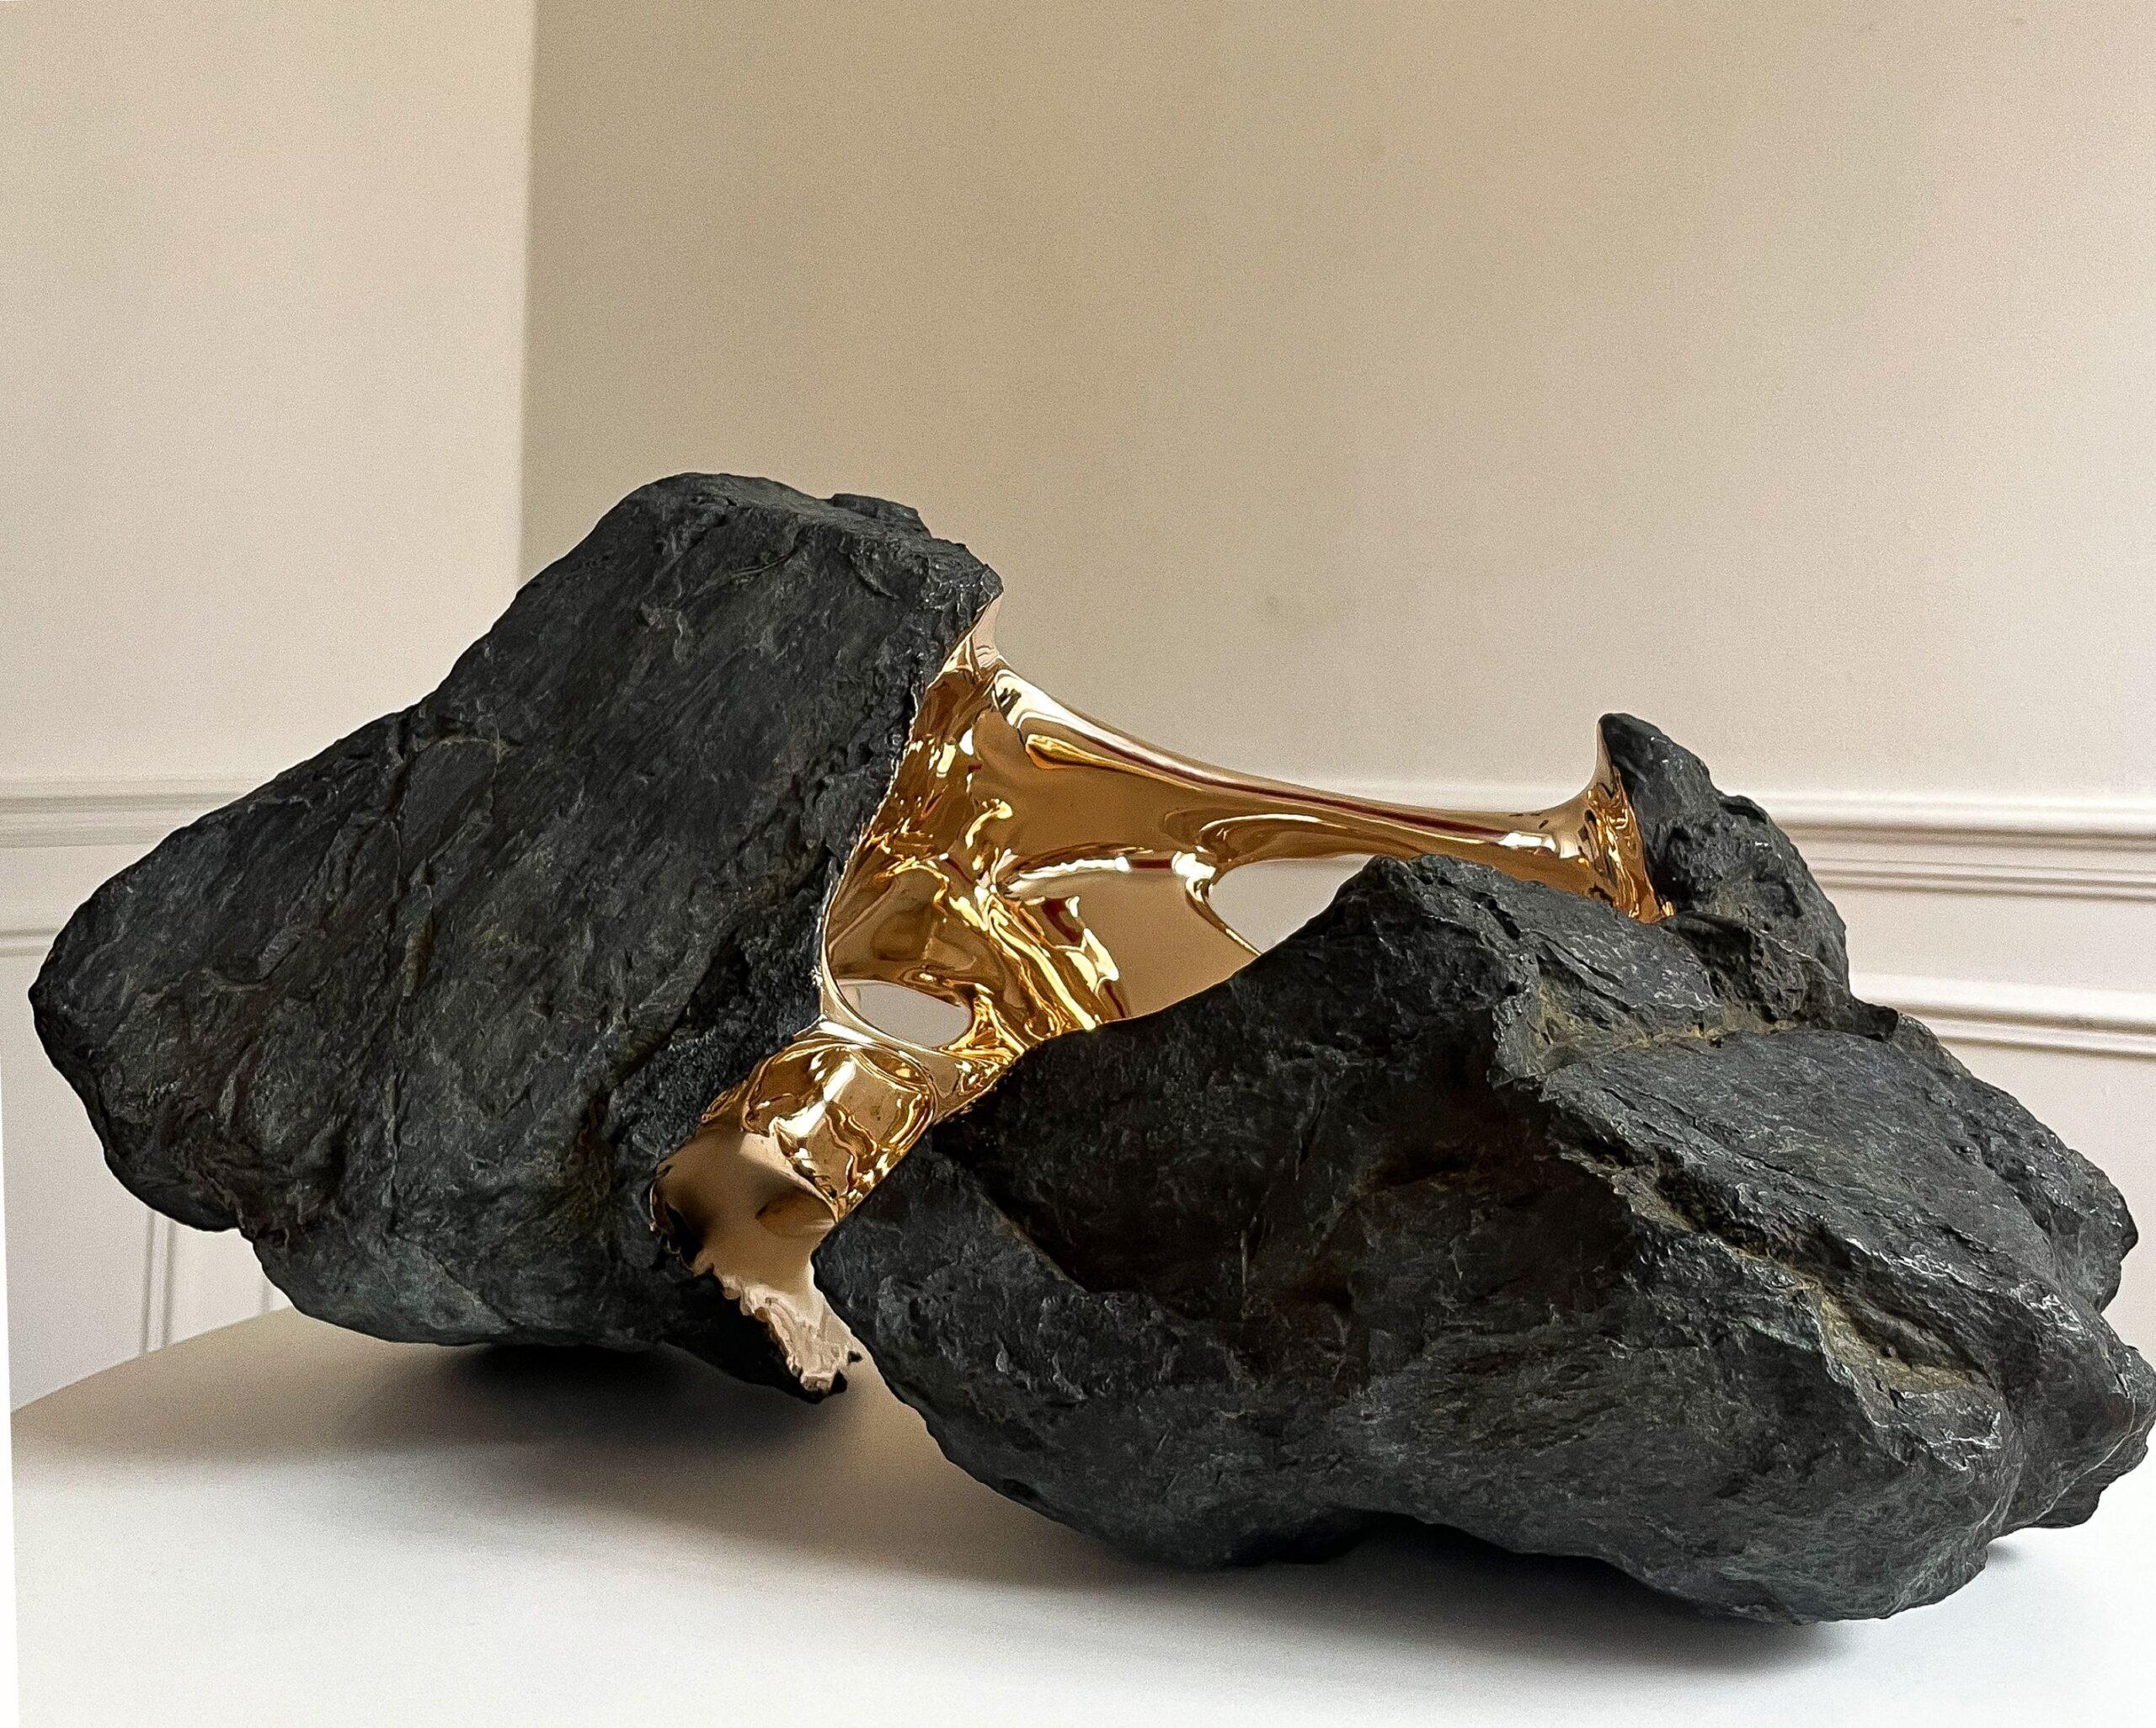 Kairos de Romain Langlois - Sculpture en bronze ressemblant à une roche, dorée, abstraite en vente 5